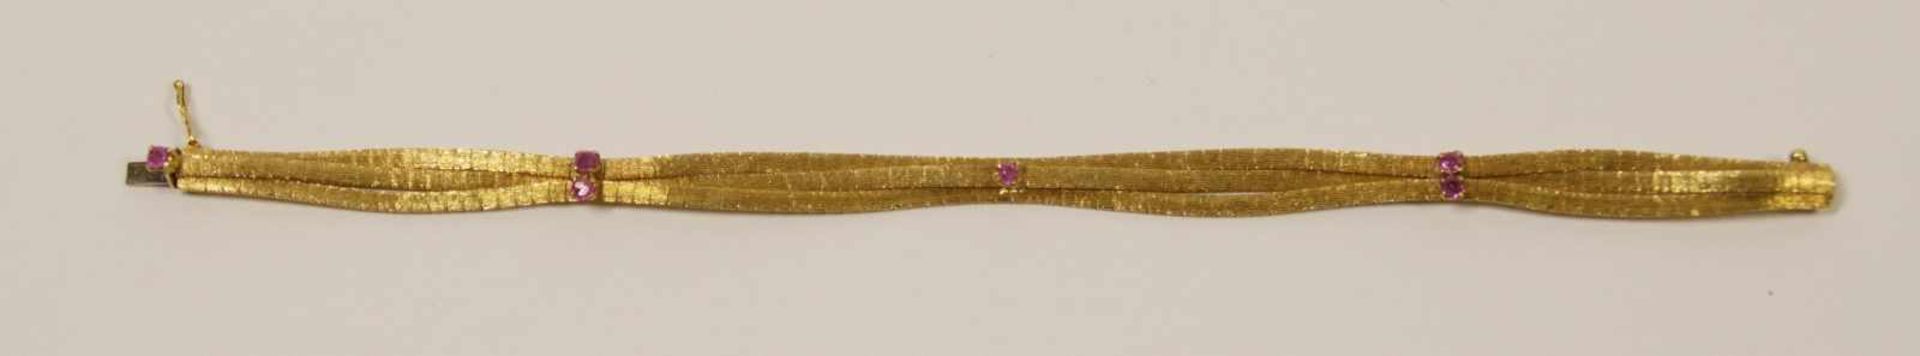 Milanaise-Armbandbesetzt mit sechs kleinen Rubinen, Gewicht 20 g, 18 kt., Länge 19,5 cm